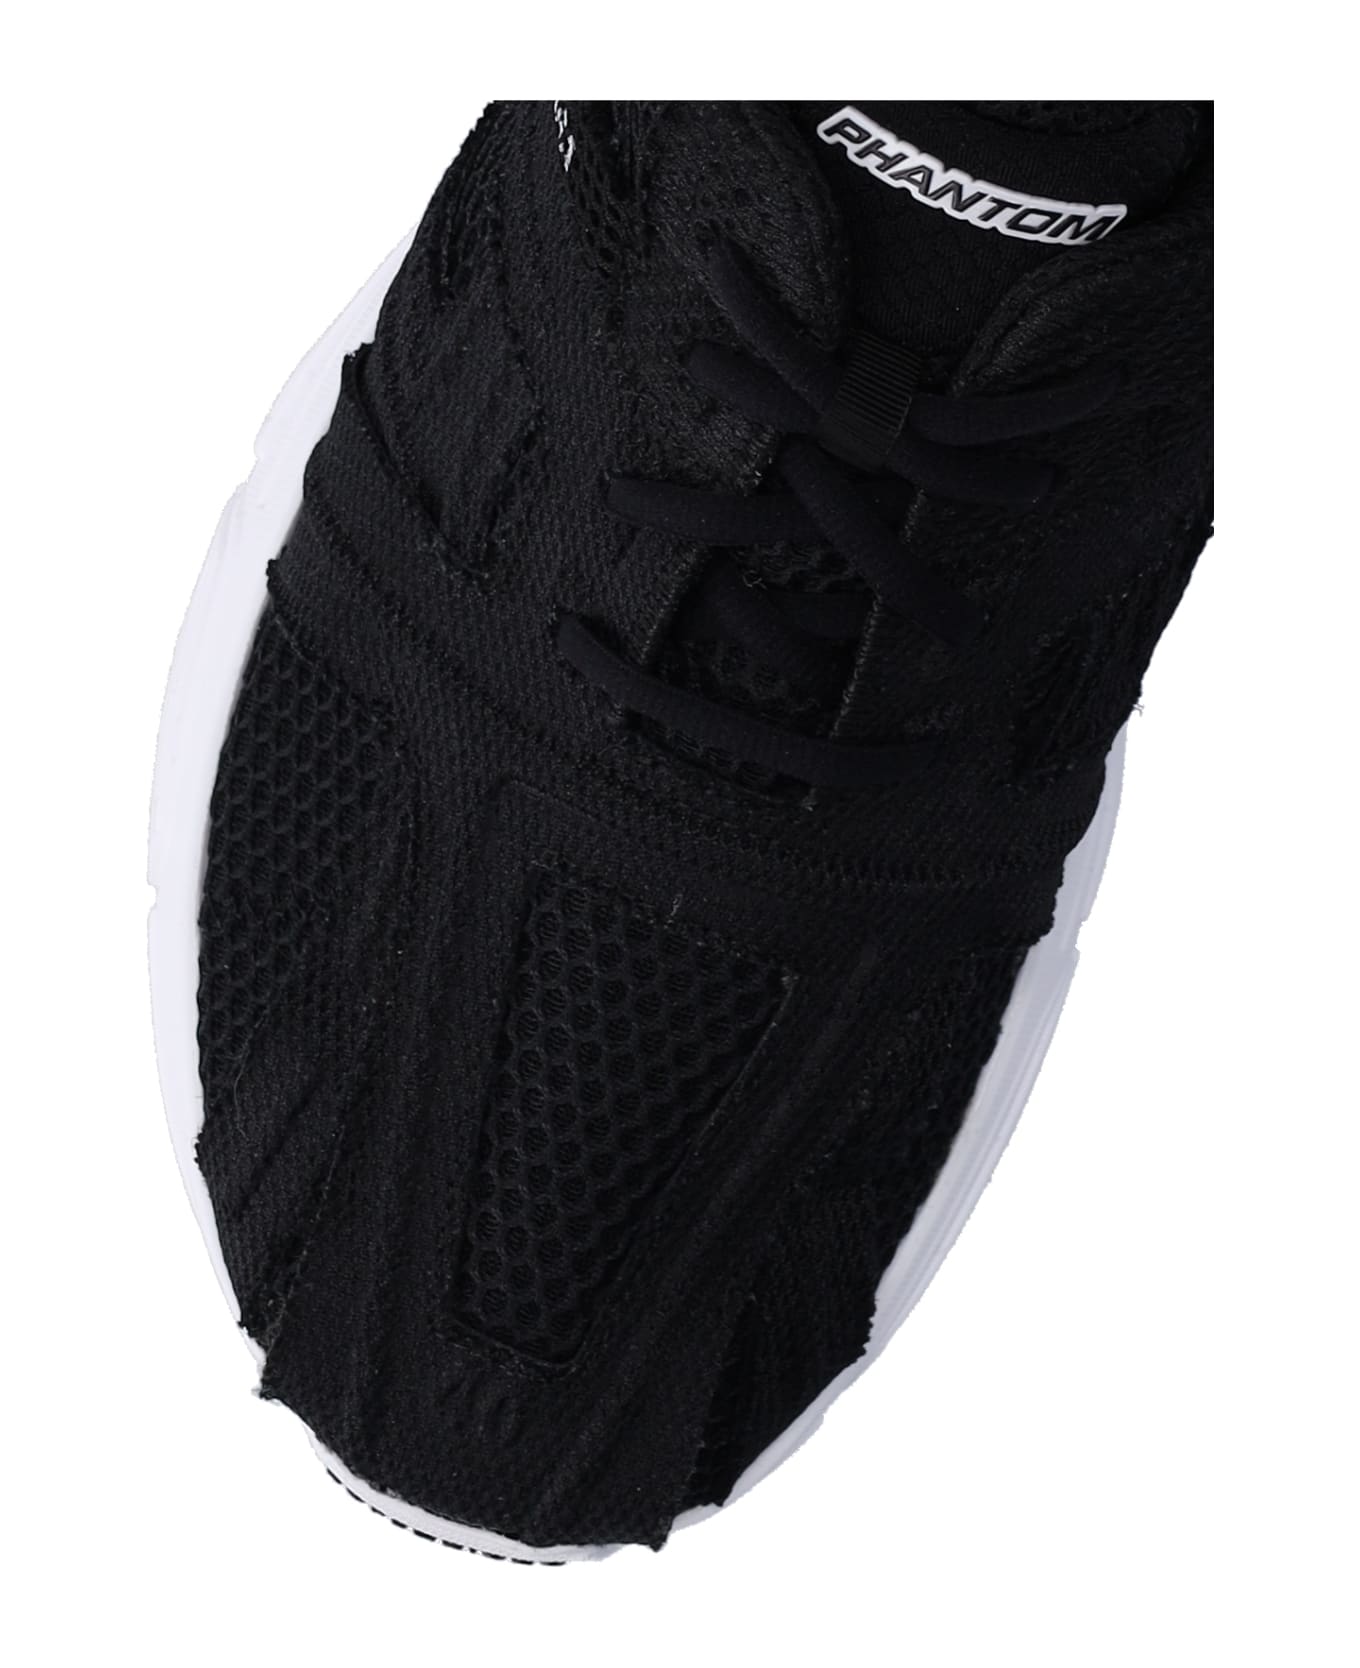 Balenciaga Phantom Sneakers - Black